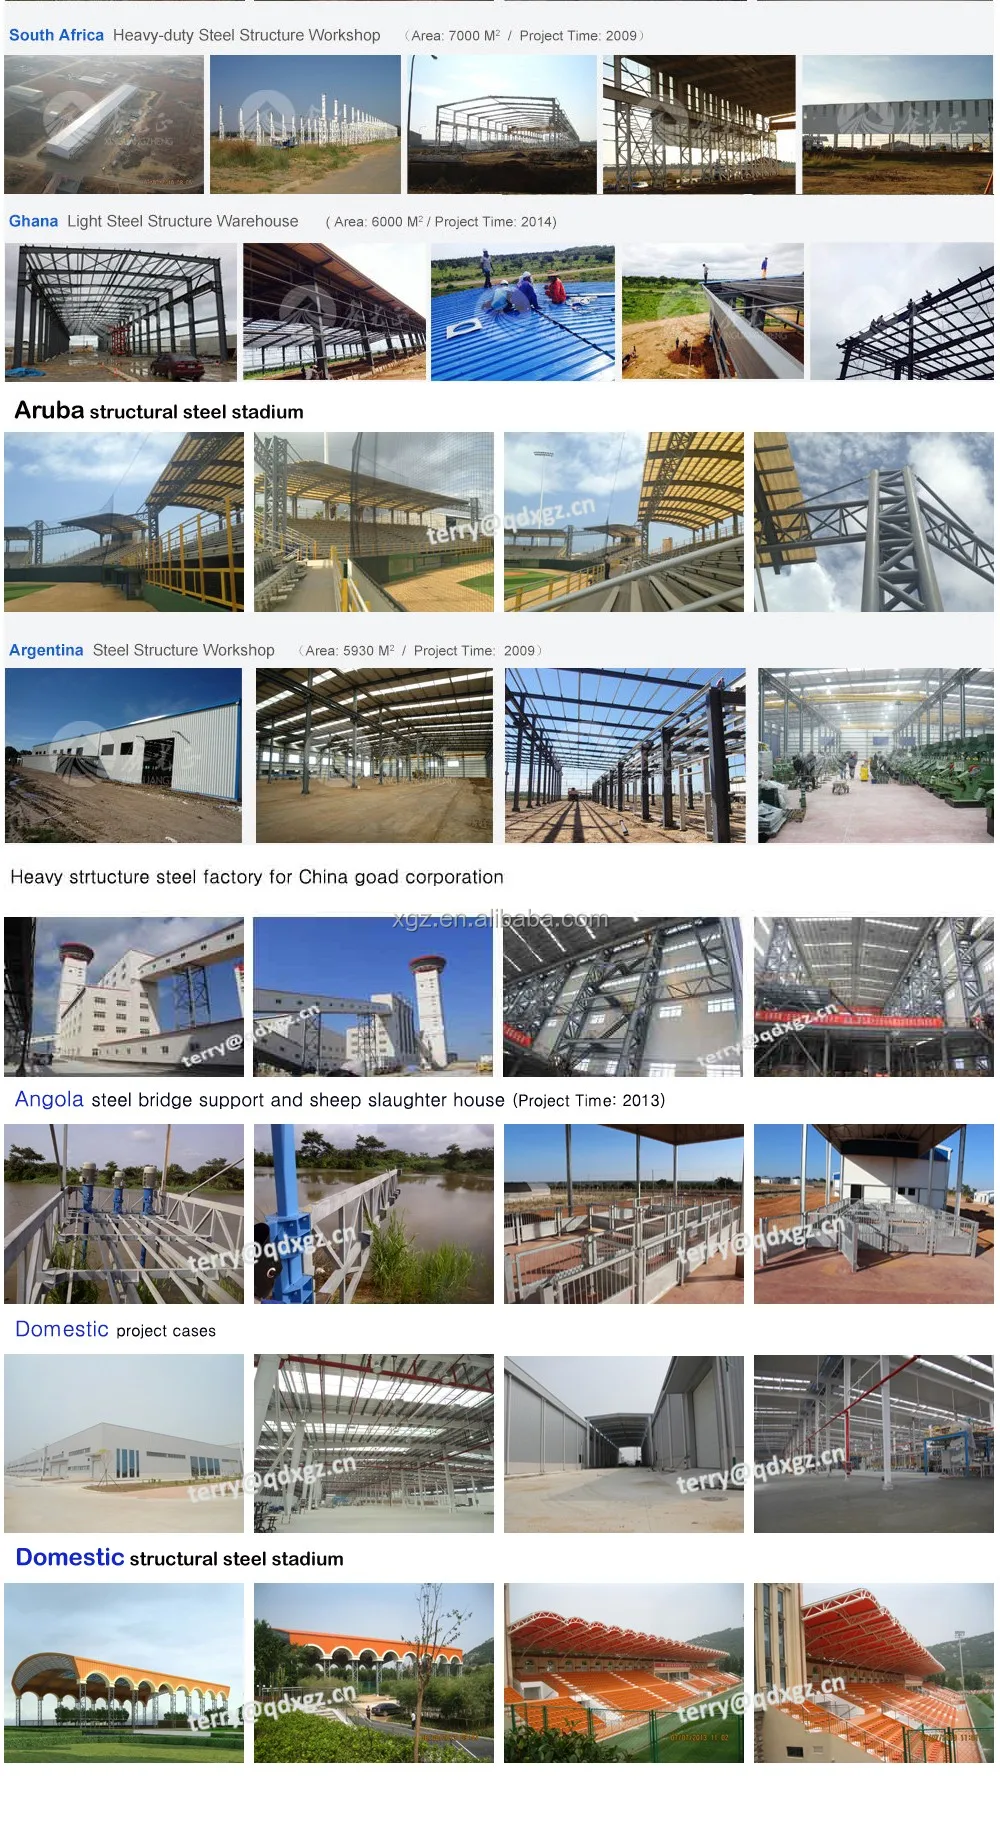 easy assembled prefabricated building steel frame,metal frame manufacturer